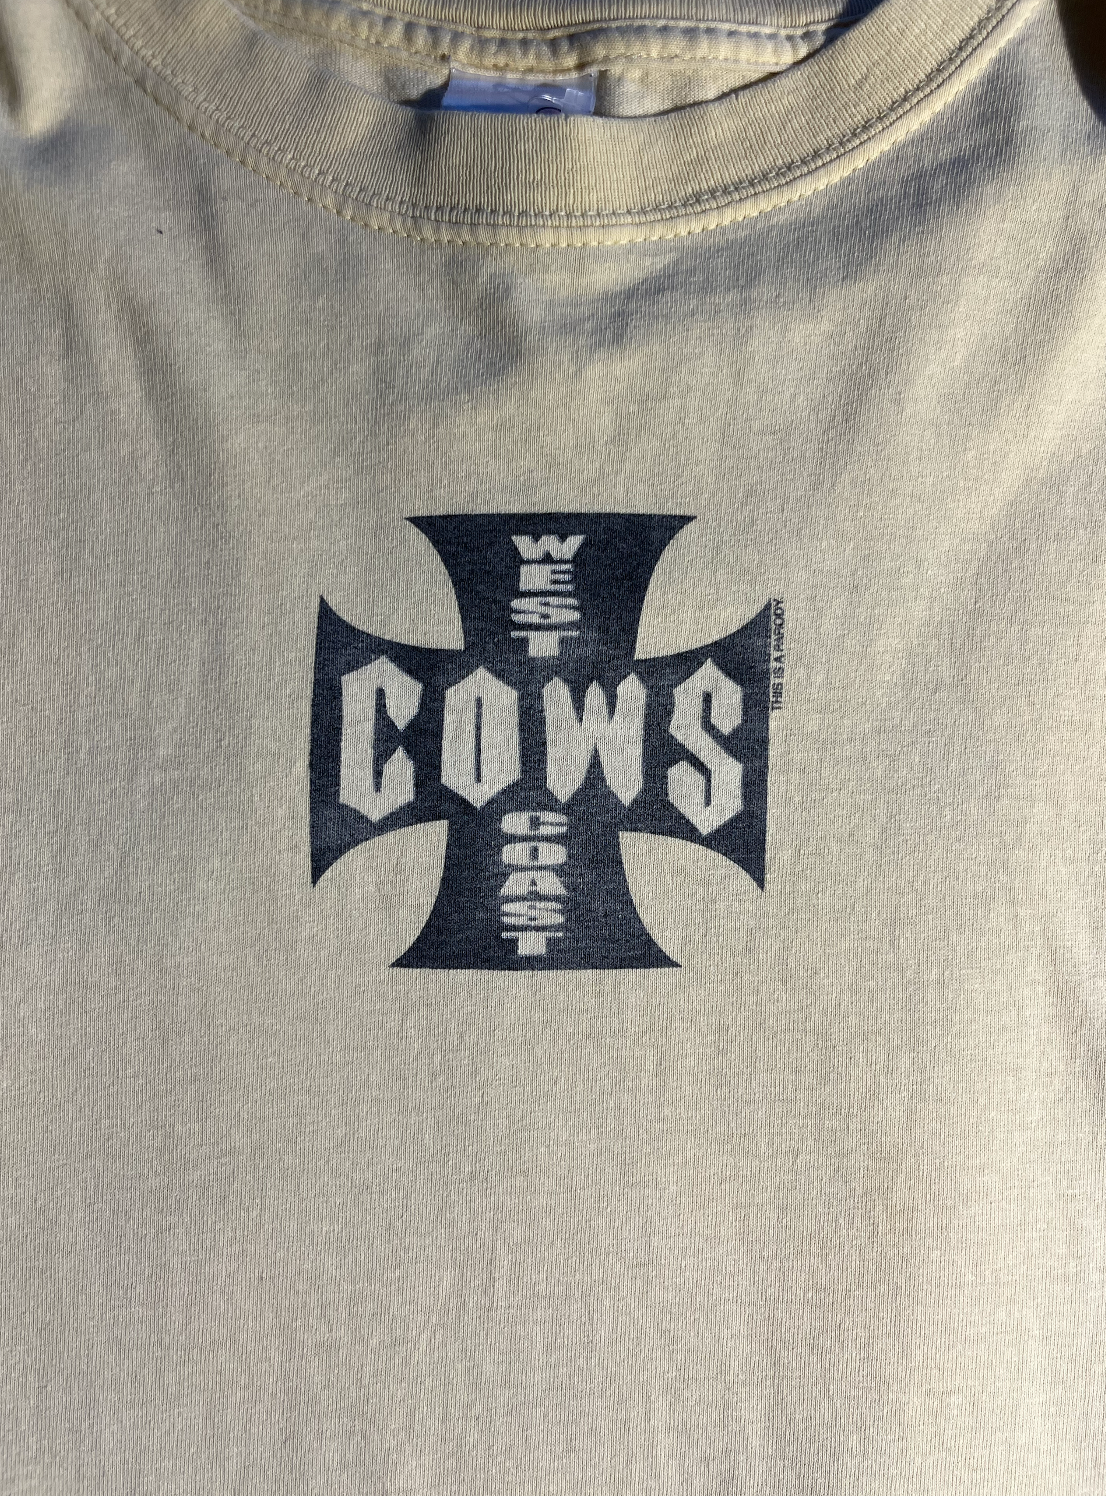 Vintage West Coast Cows T-Shirt